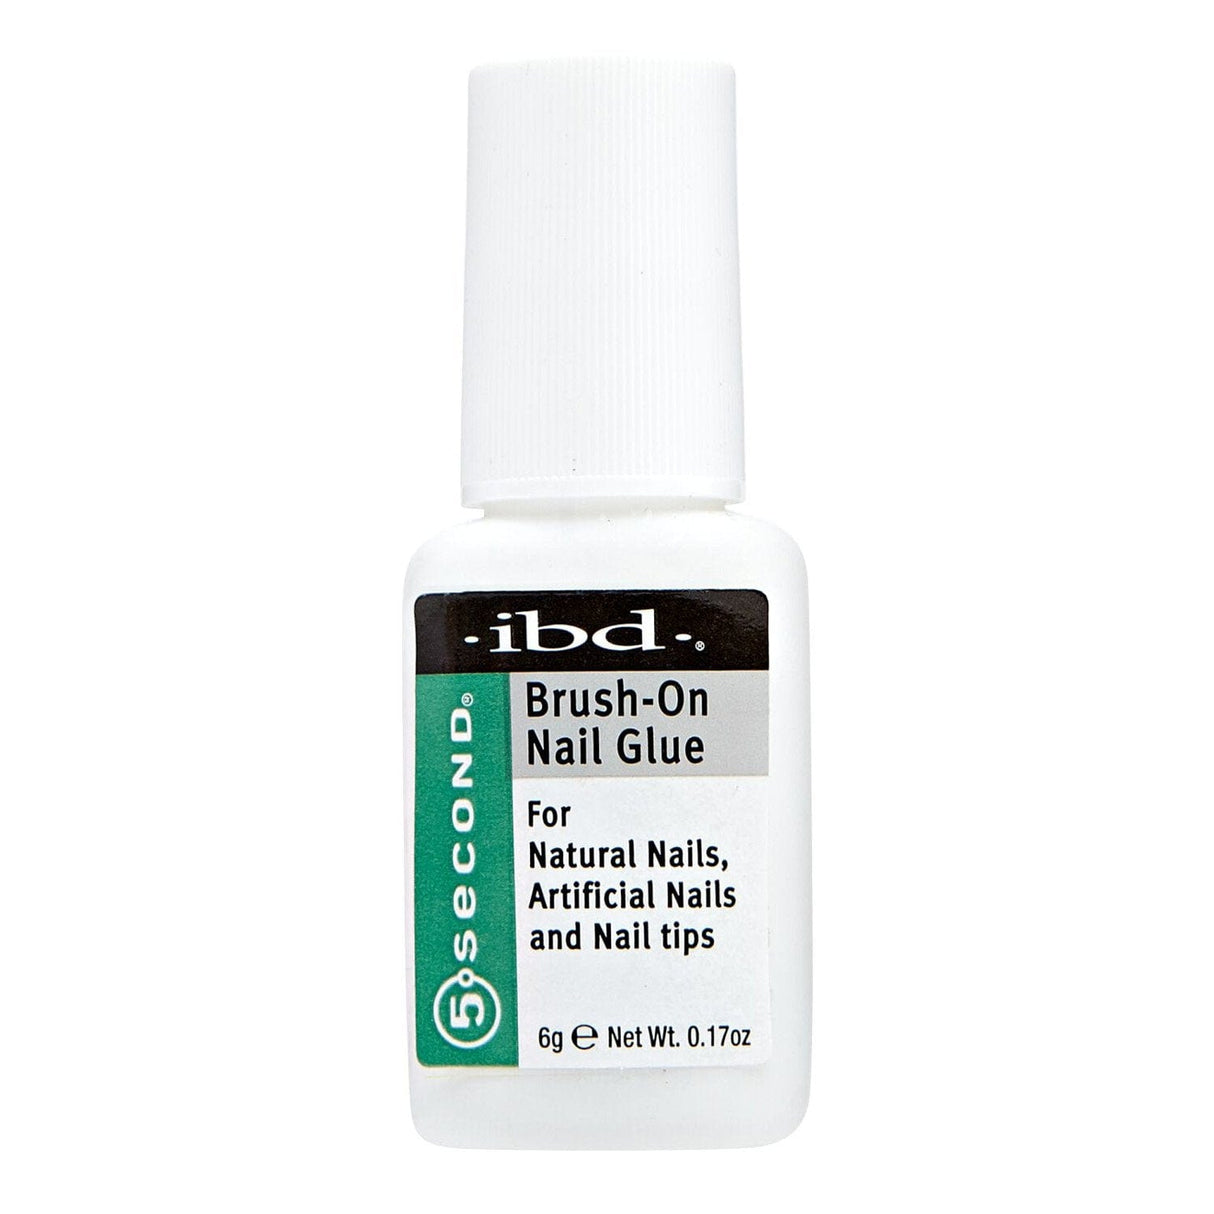 IBD Nail Adhesive 5 Second Brush on Nail Glue 0.2 oz